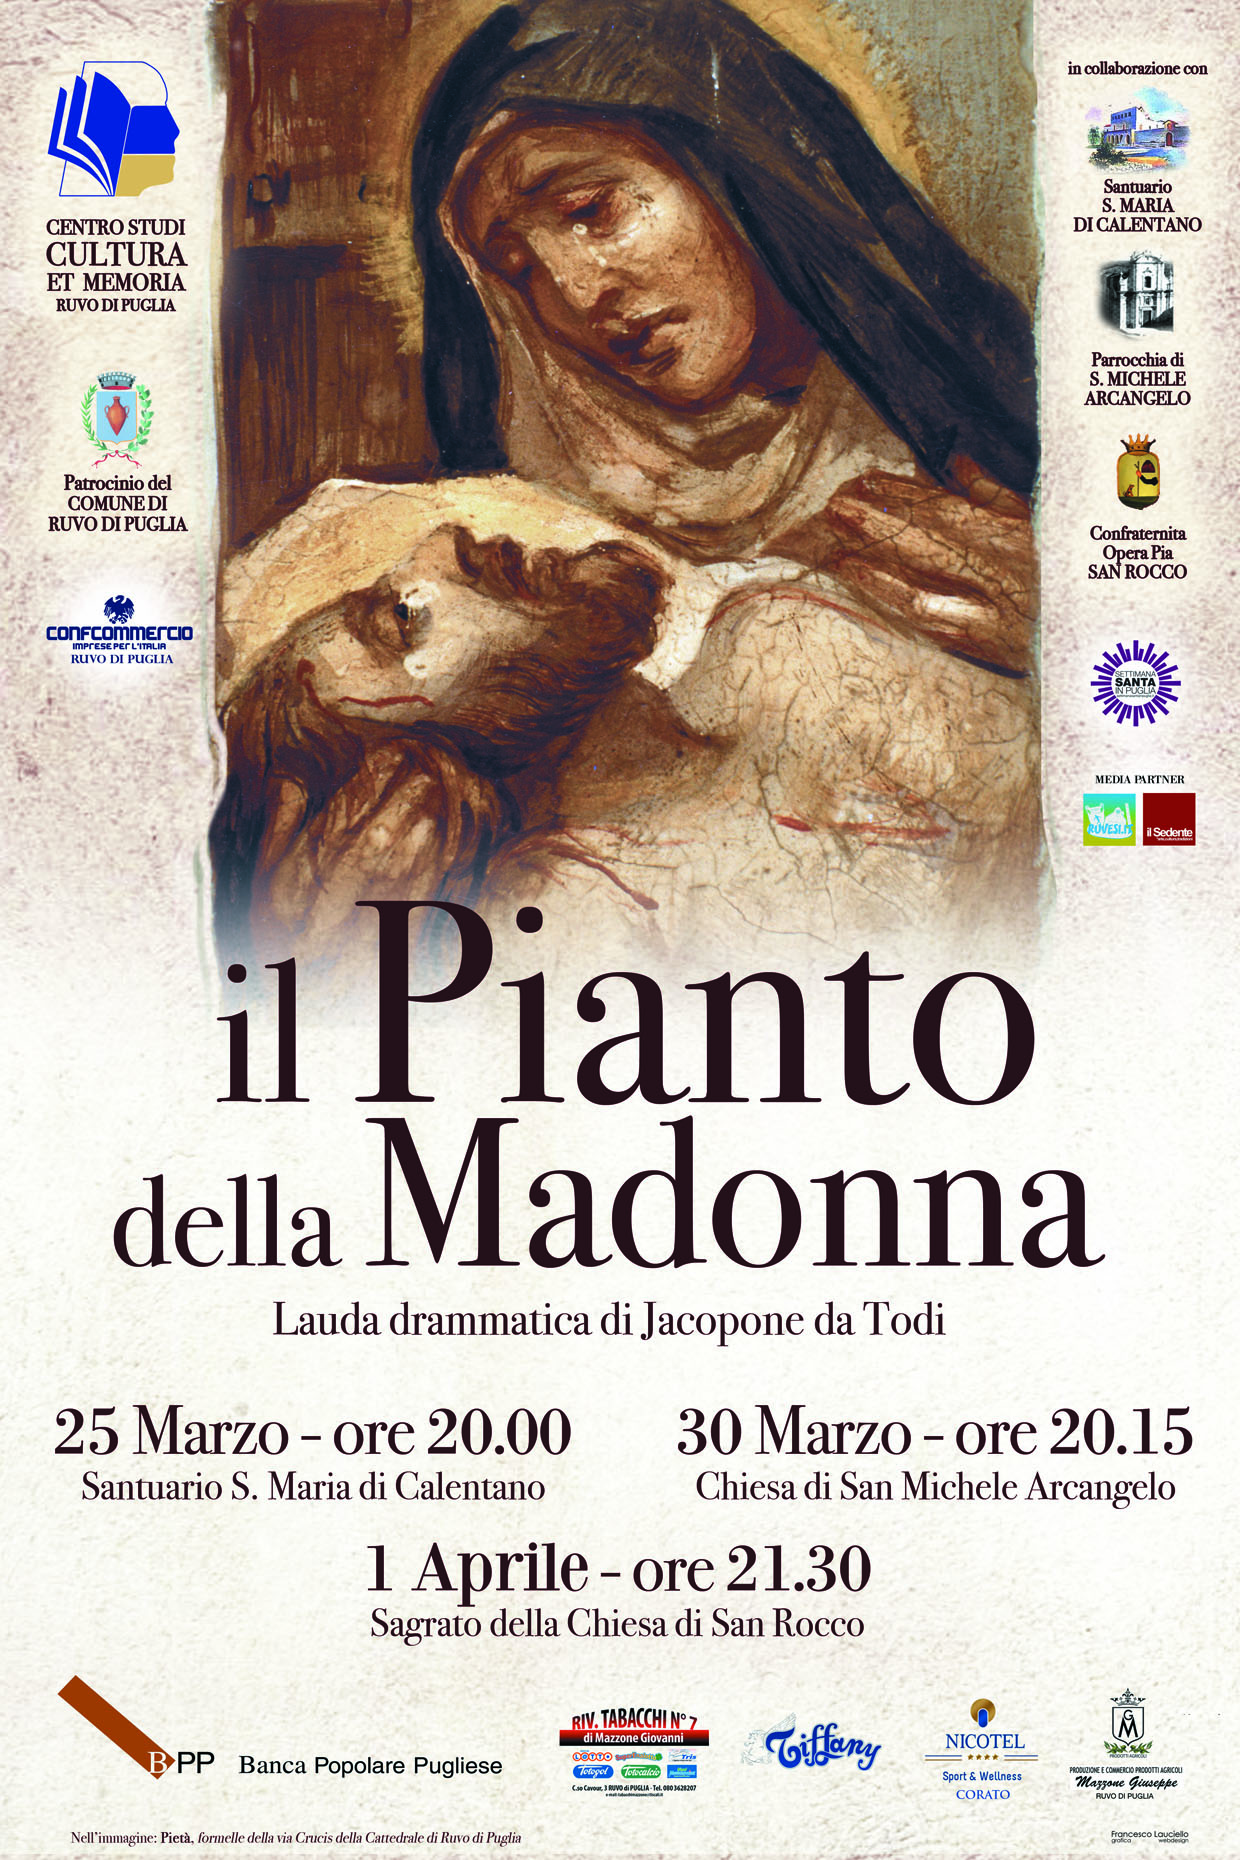 Il Pianto della Madonna: la lauda di Jacopone da Todi a Calentano.